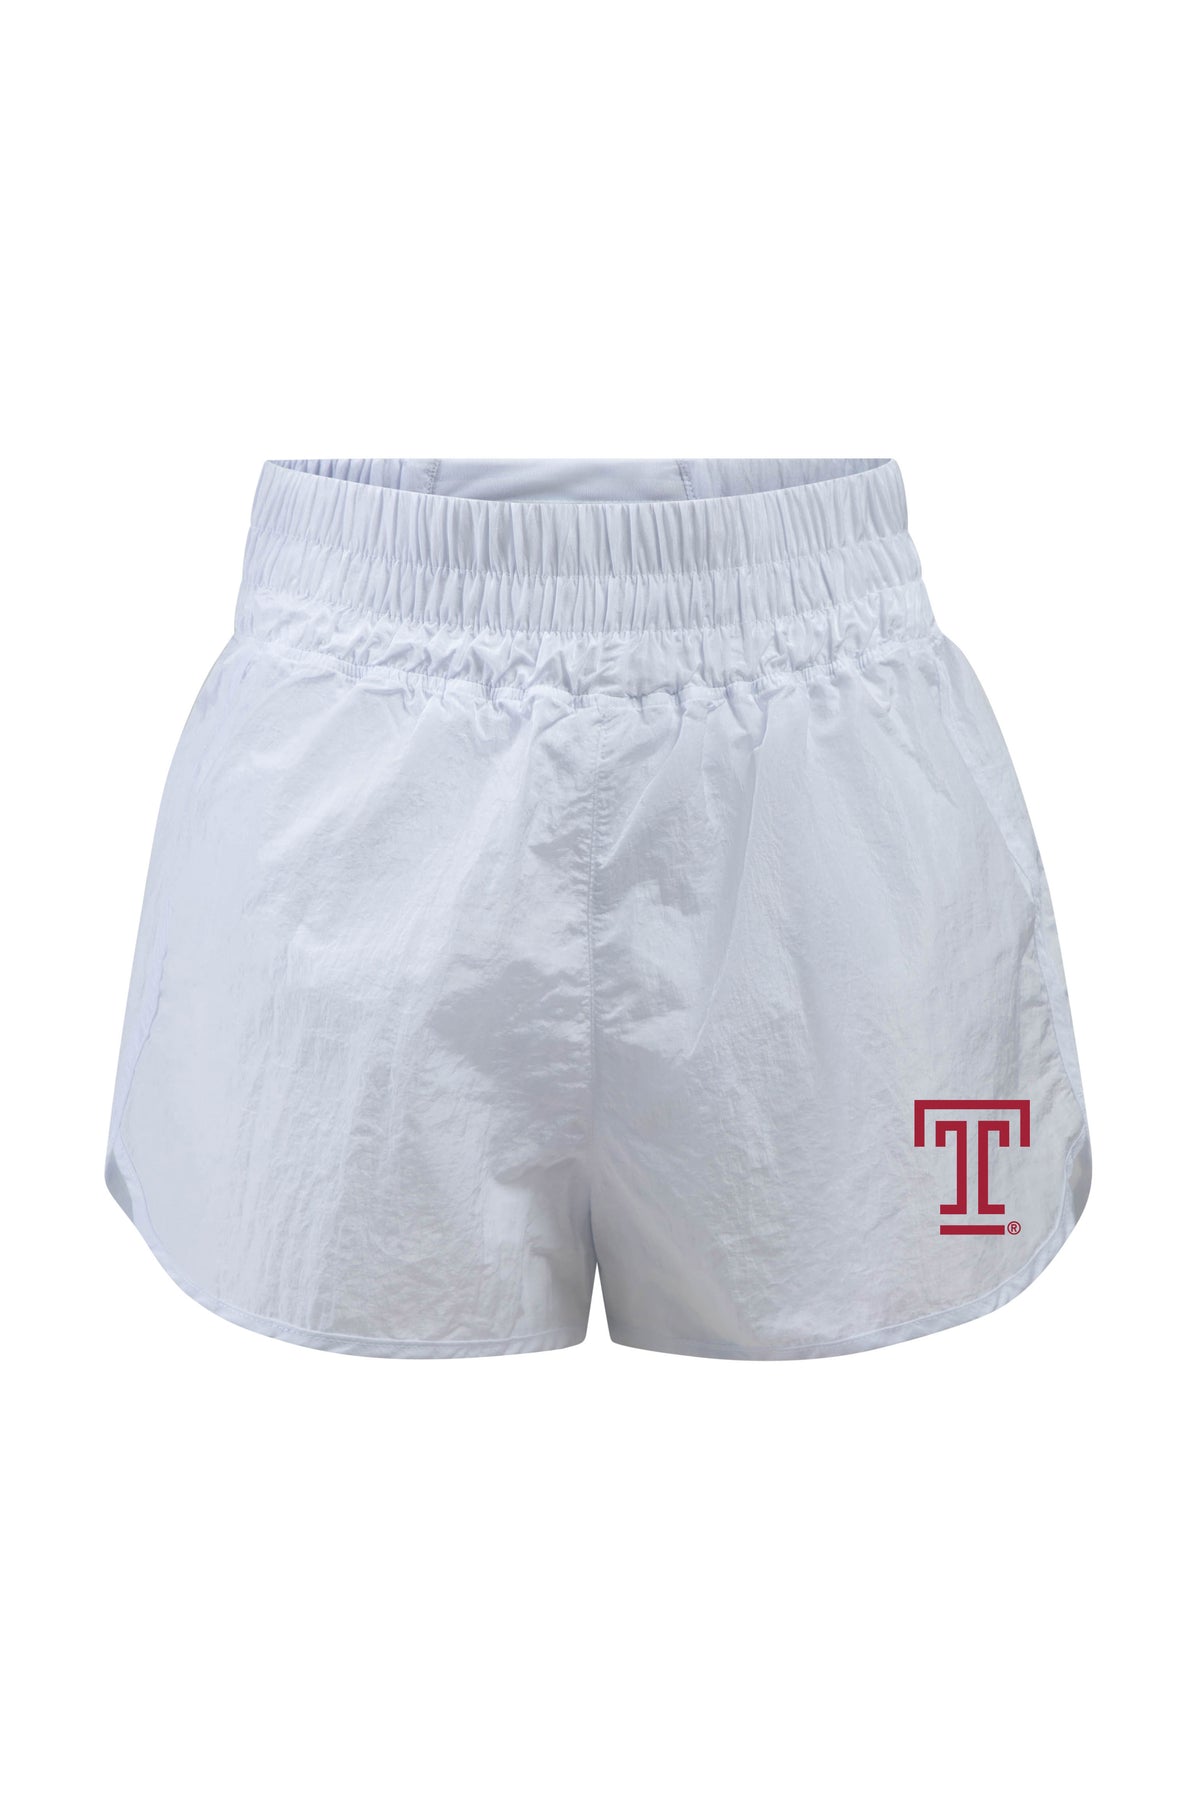 Temple University Boxer Short